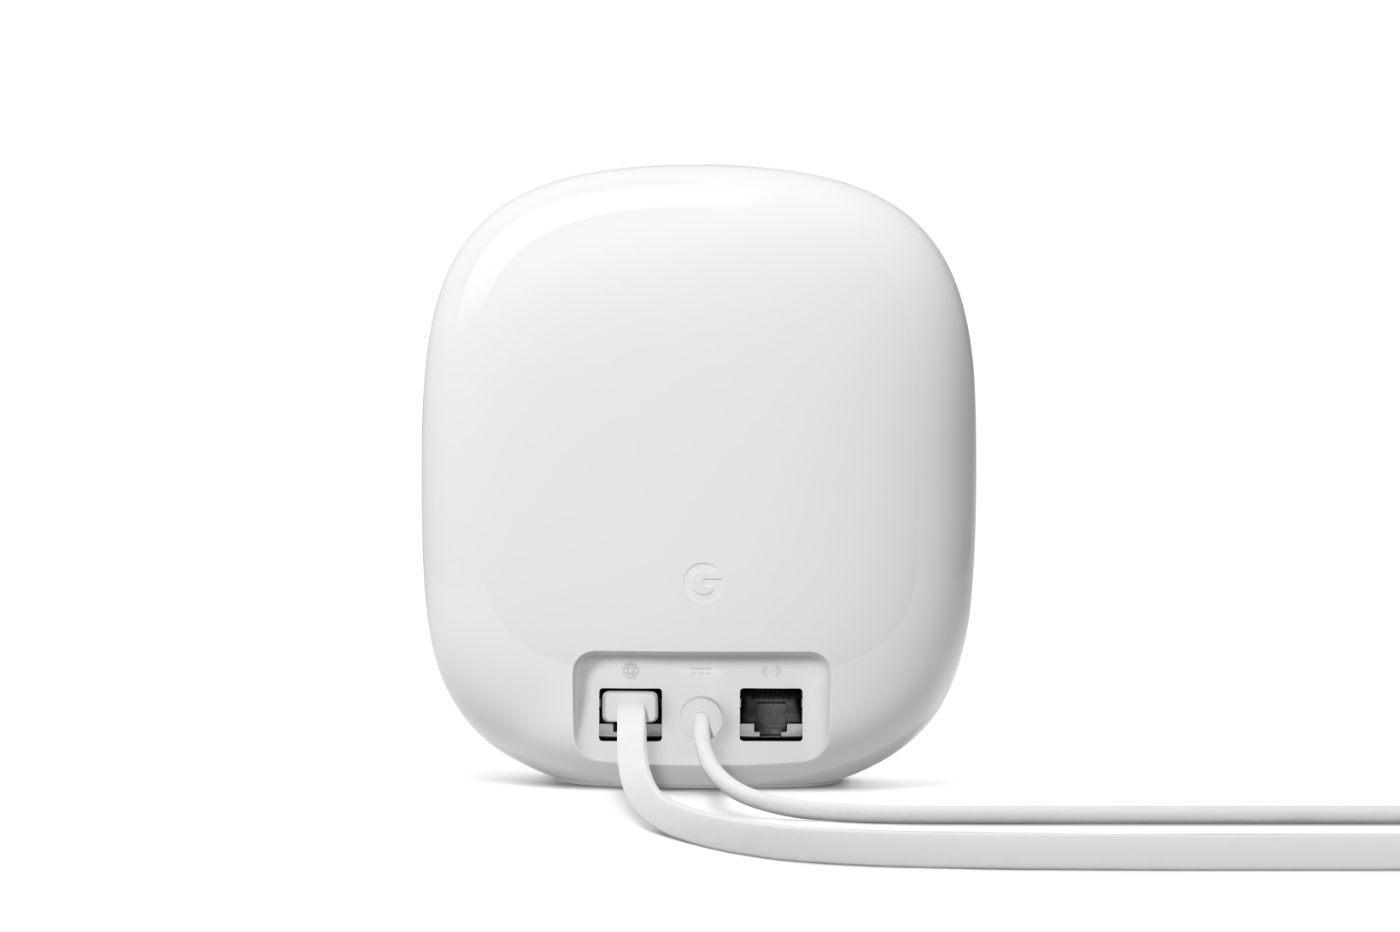 Le Nest WiFi Pro propose deux ports Gigabit Ethernet.